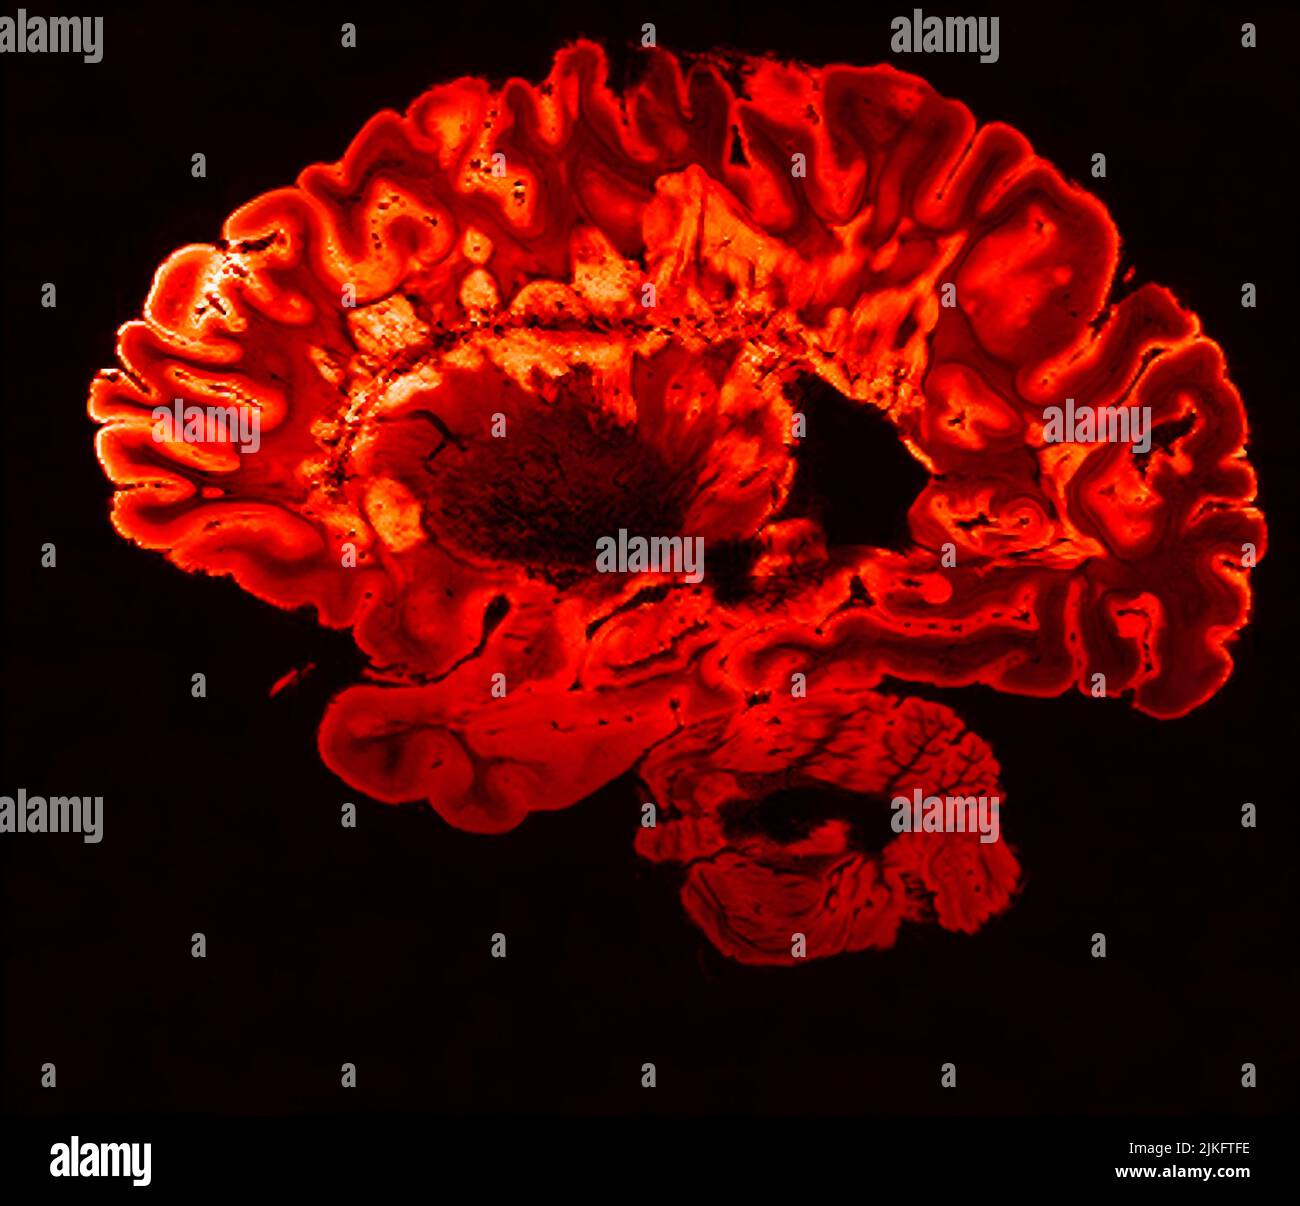 Dies ist ein pseudo-farbiger Bildausschnitt eines hochauflösenden Gradientenecho-MRT einer festen Gehirnhemisphäre einer Person mit multipler Sklerose. Stockfoto